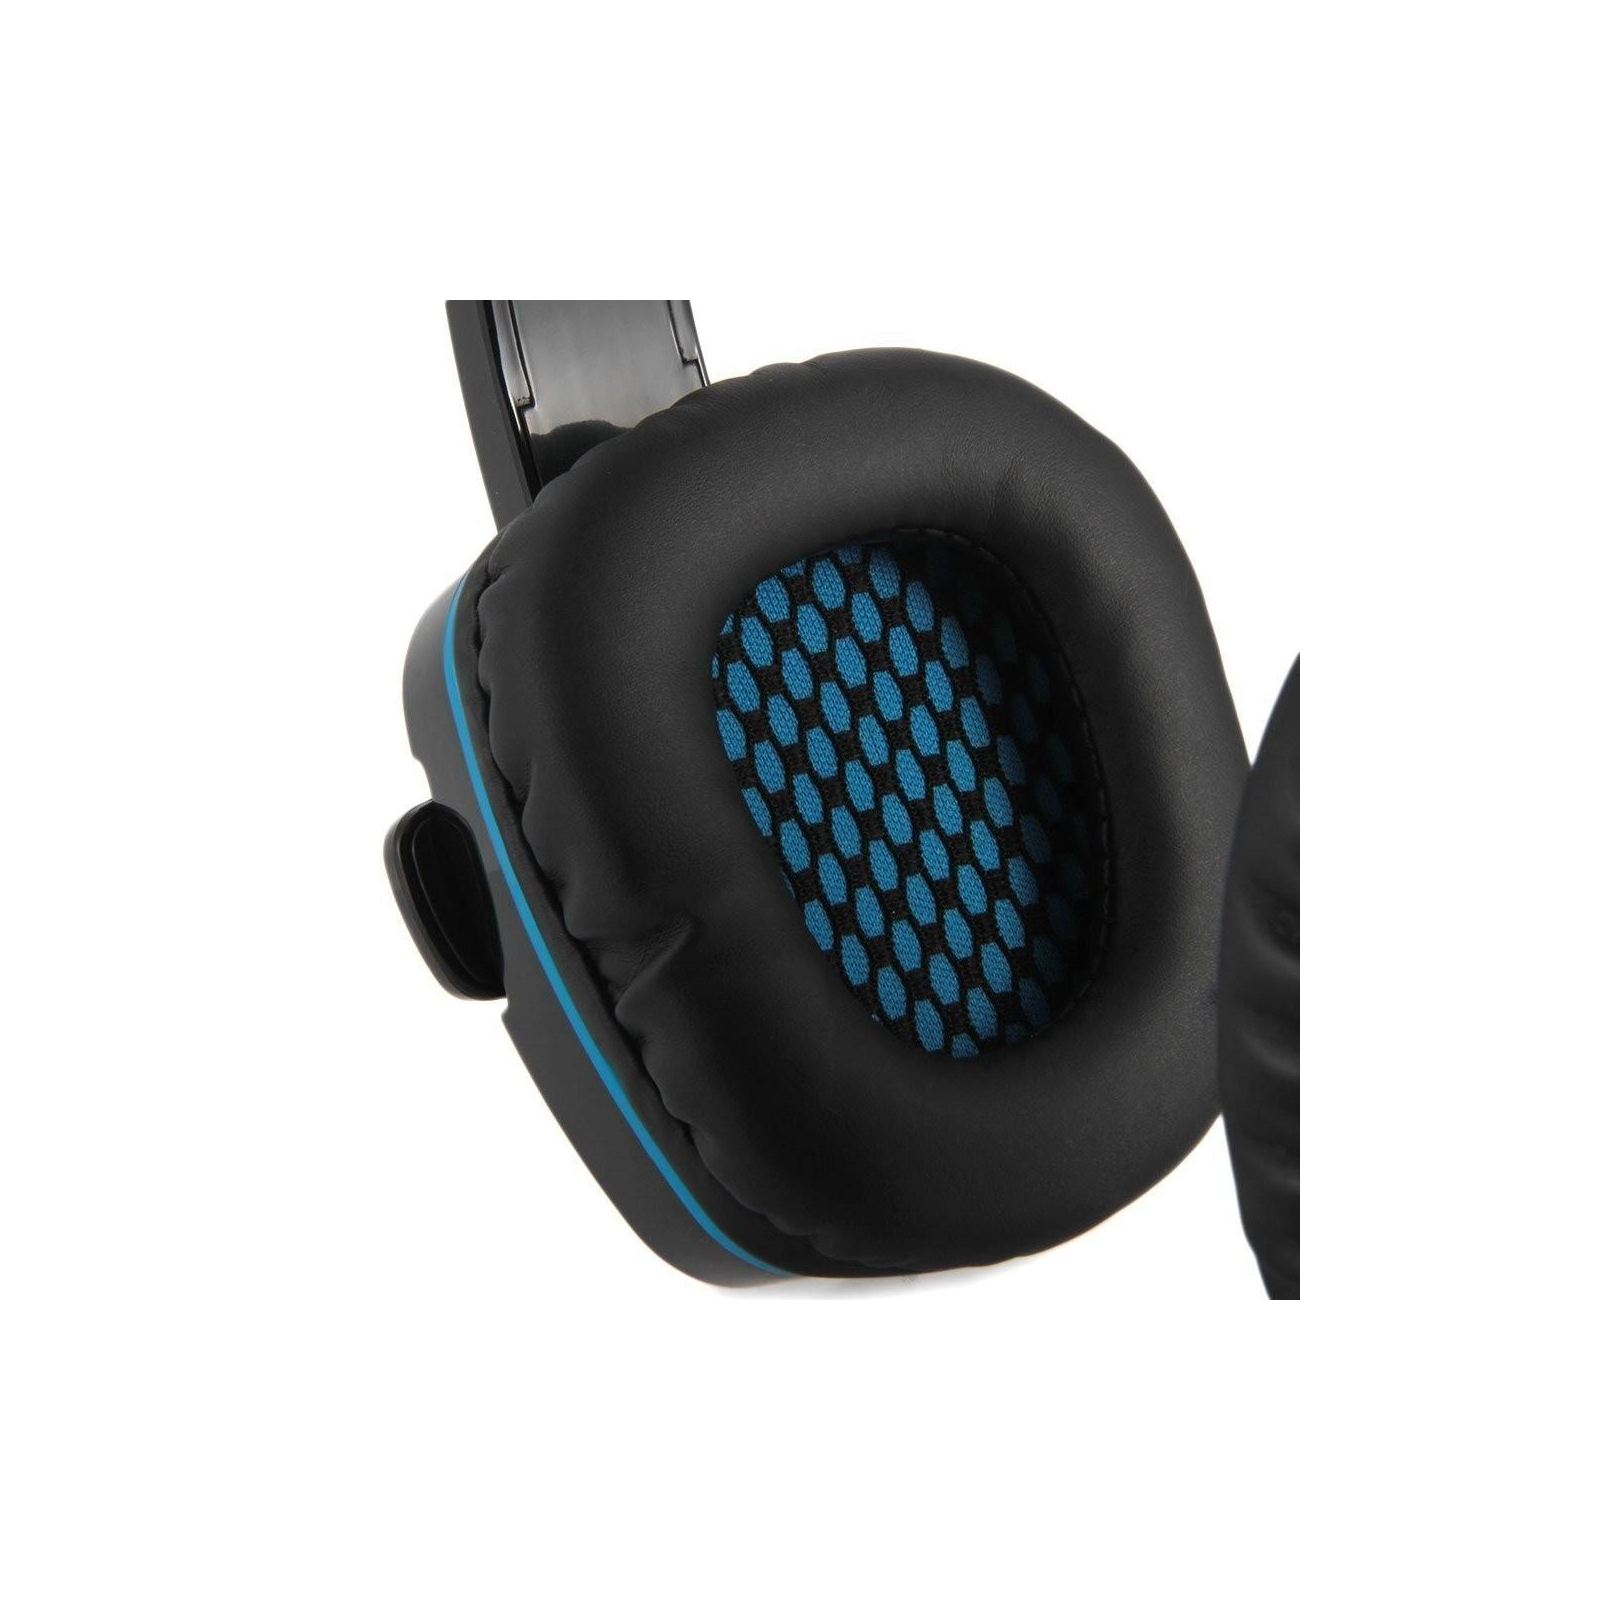 Навушники Sades Gpower Black/Blue (SA708-B-BL) зображення 6